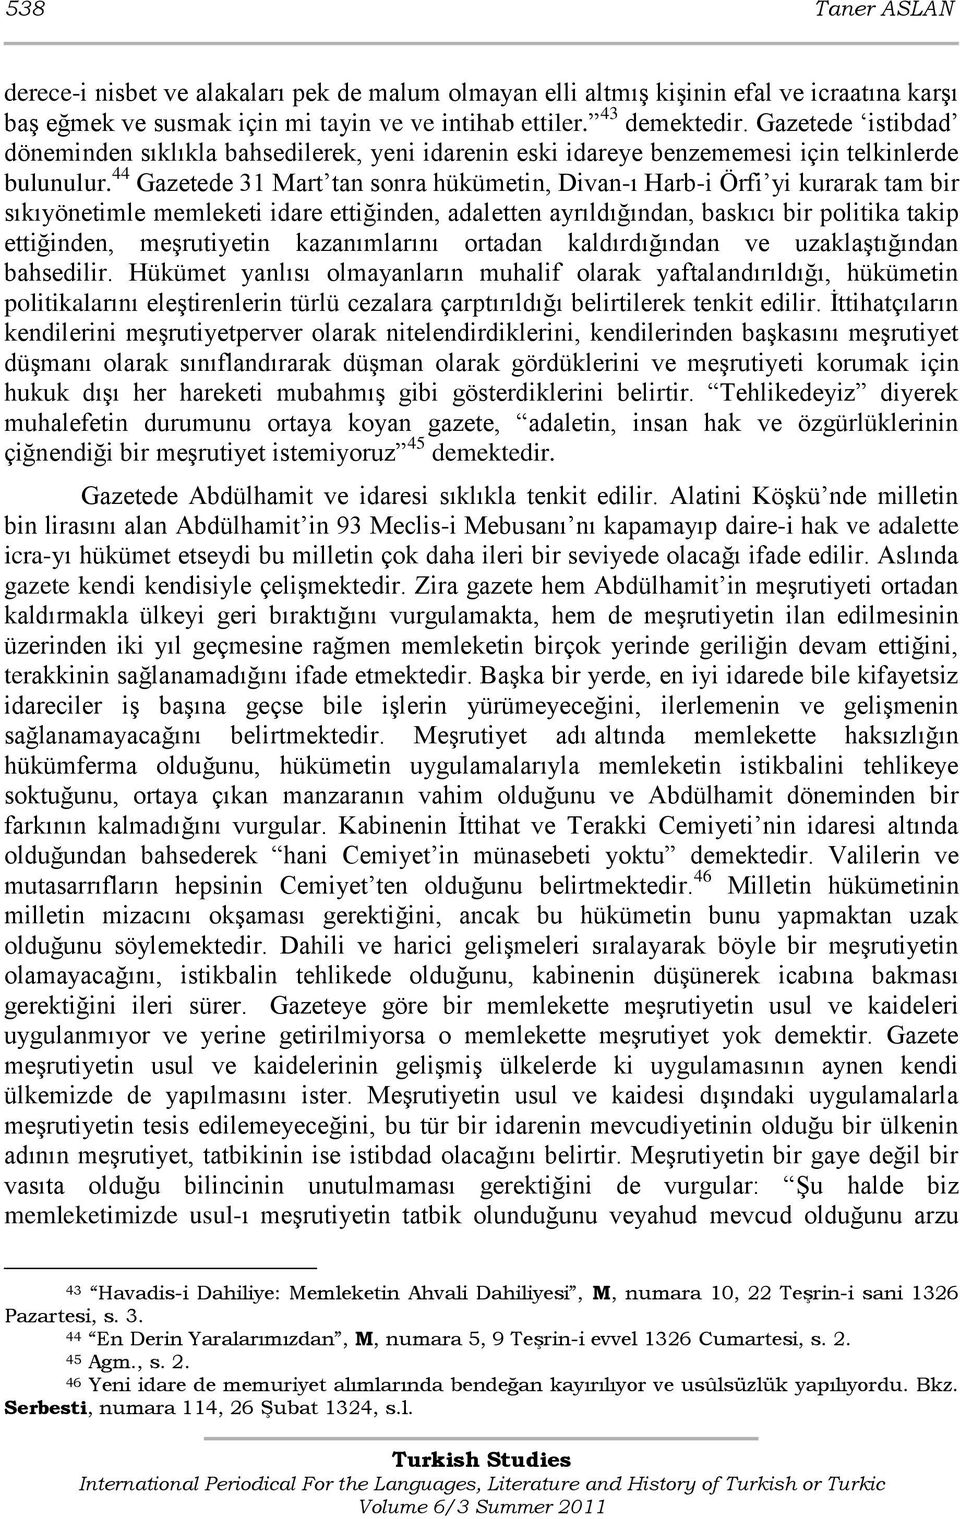 44 Gazetede 31 Mart tan sonra hükümetin, Divan-ı Harb-i Örfi yi kurarak tam bir sıkıyönetimle memleketi idare ettiğinden, adaletten ayrıldığından, baskıcı bir politika takip ettiğinden, meşrutiyetin